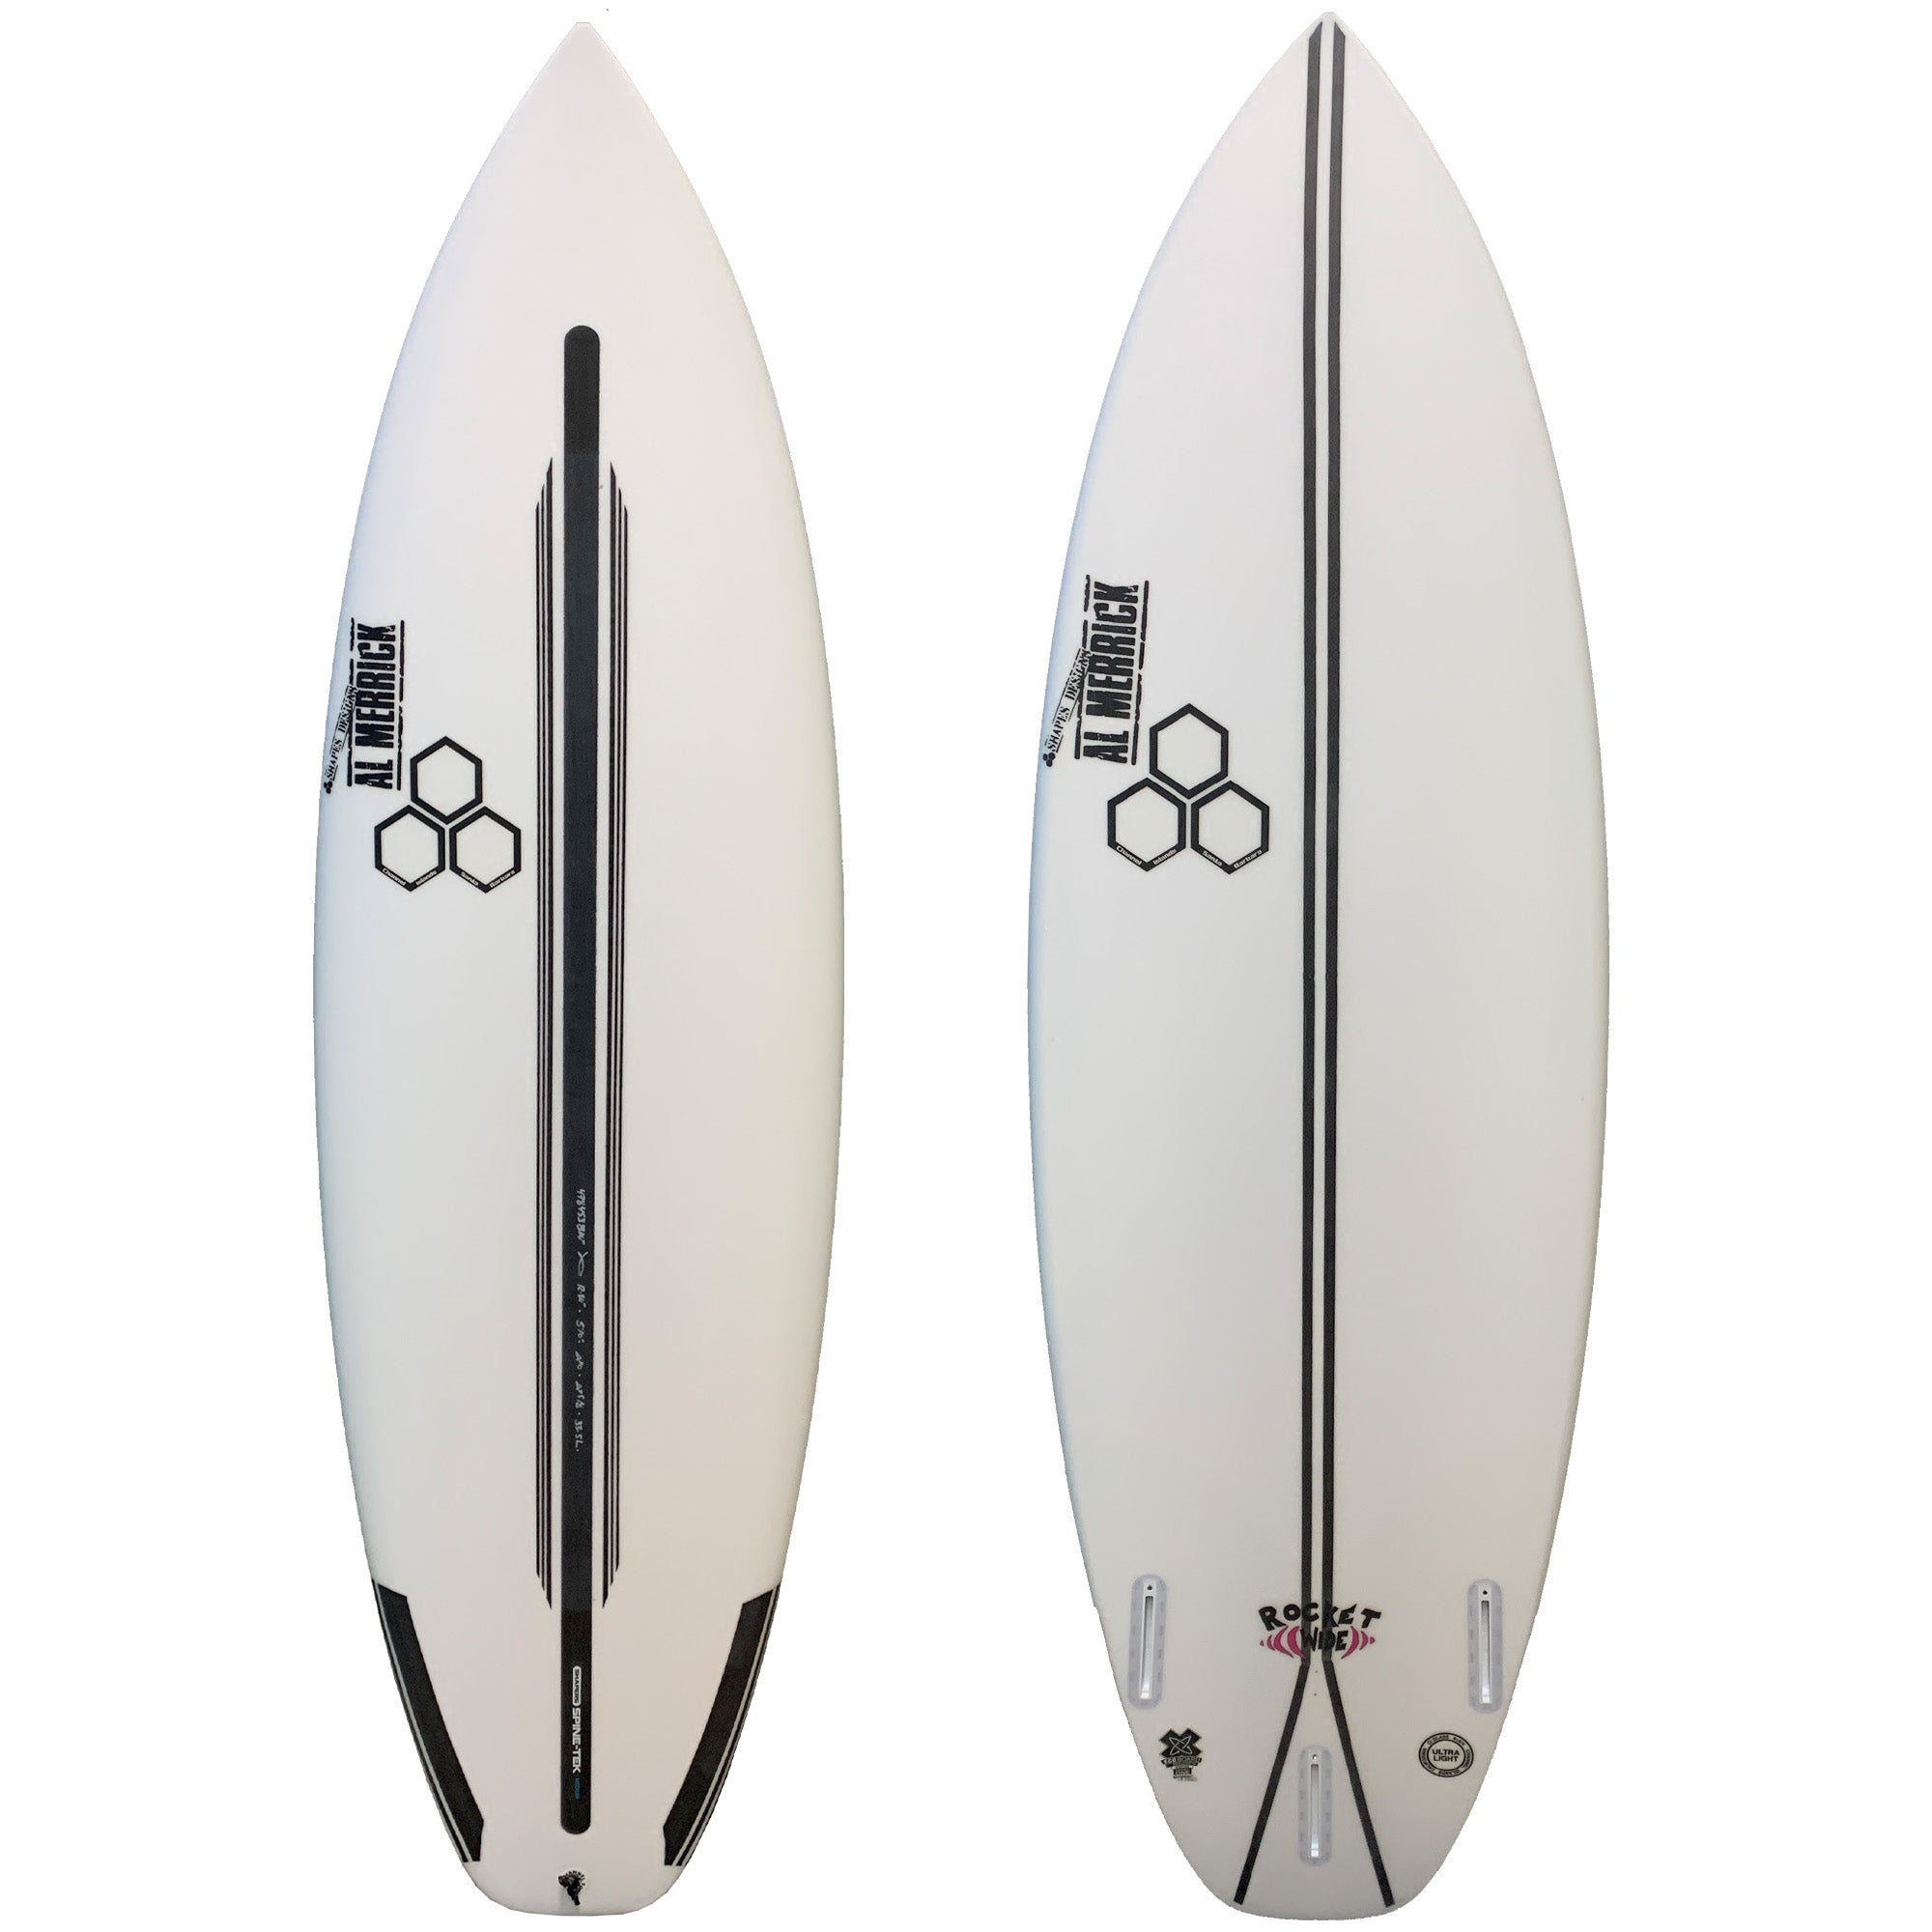 Channel Islands Rocket Wide Squash Spine-Tek Surfboard - Futures